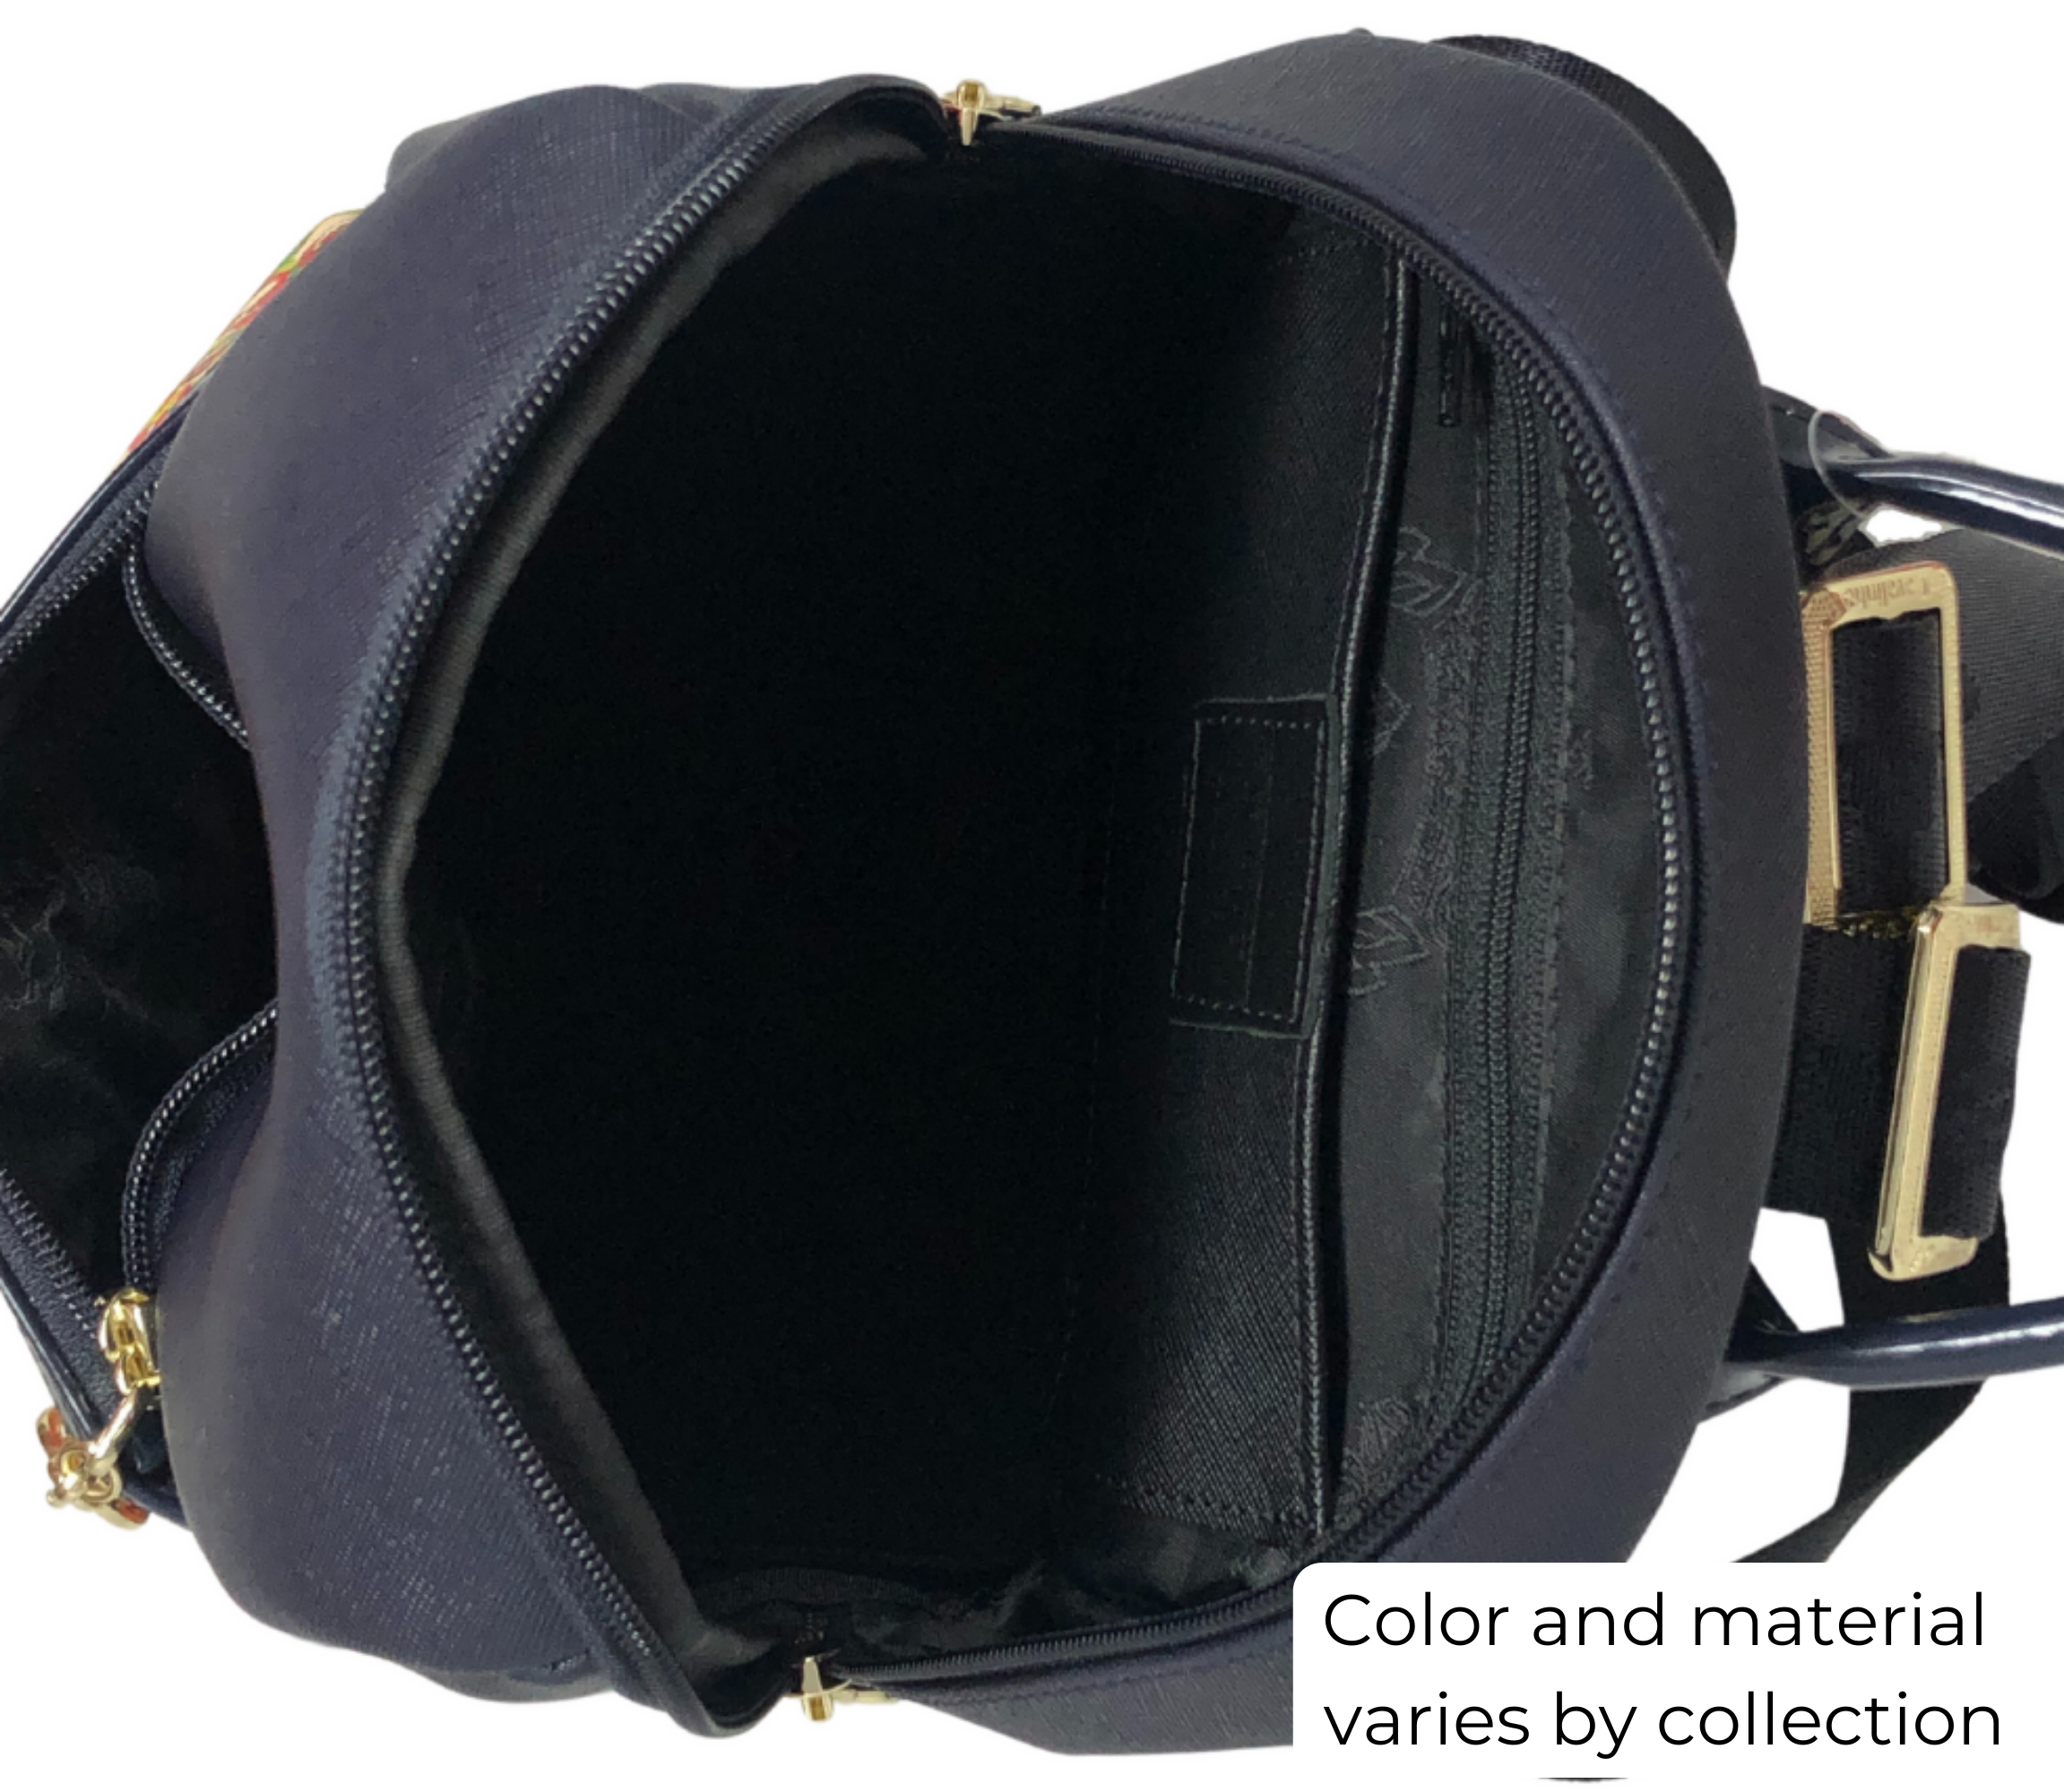 Cavalinho Charming Backpack SKU 18470249.22 #color_Navy / Tan / Beige, black, white / sand